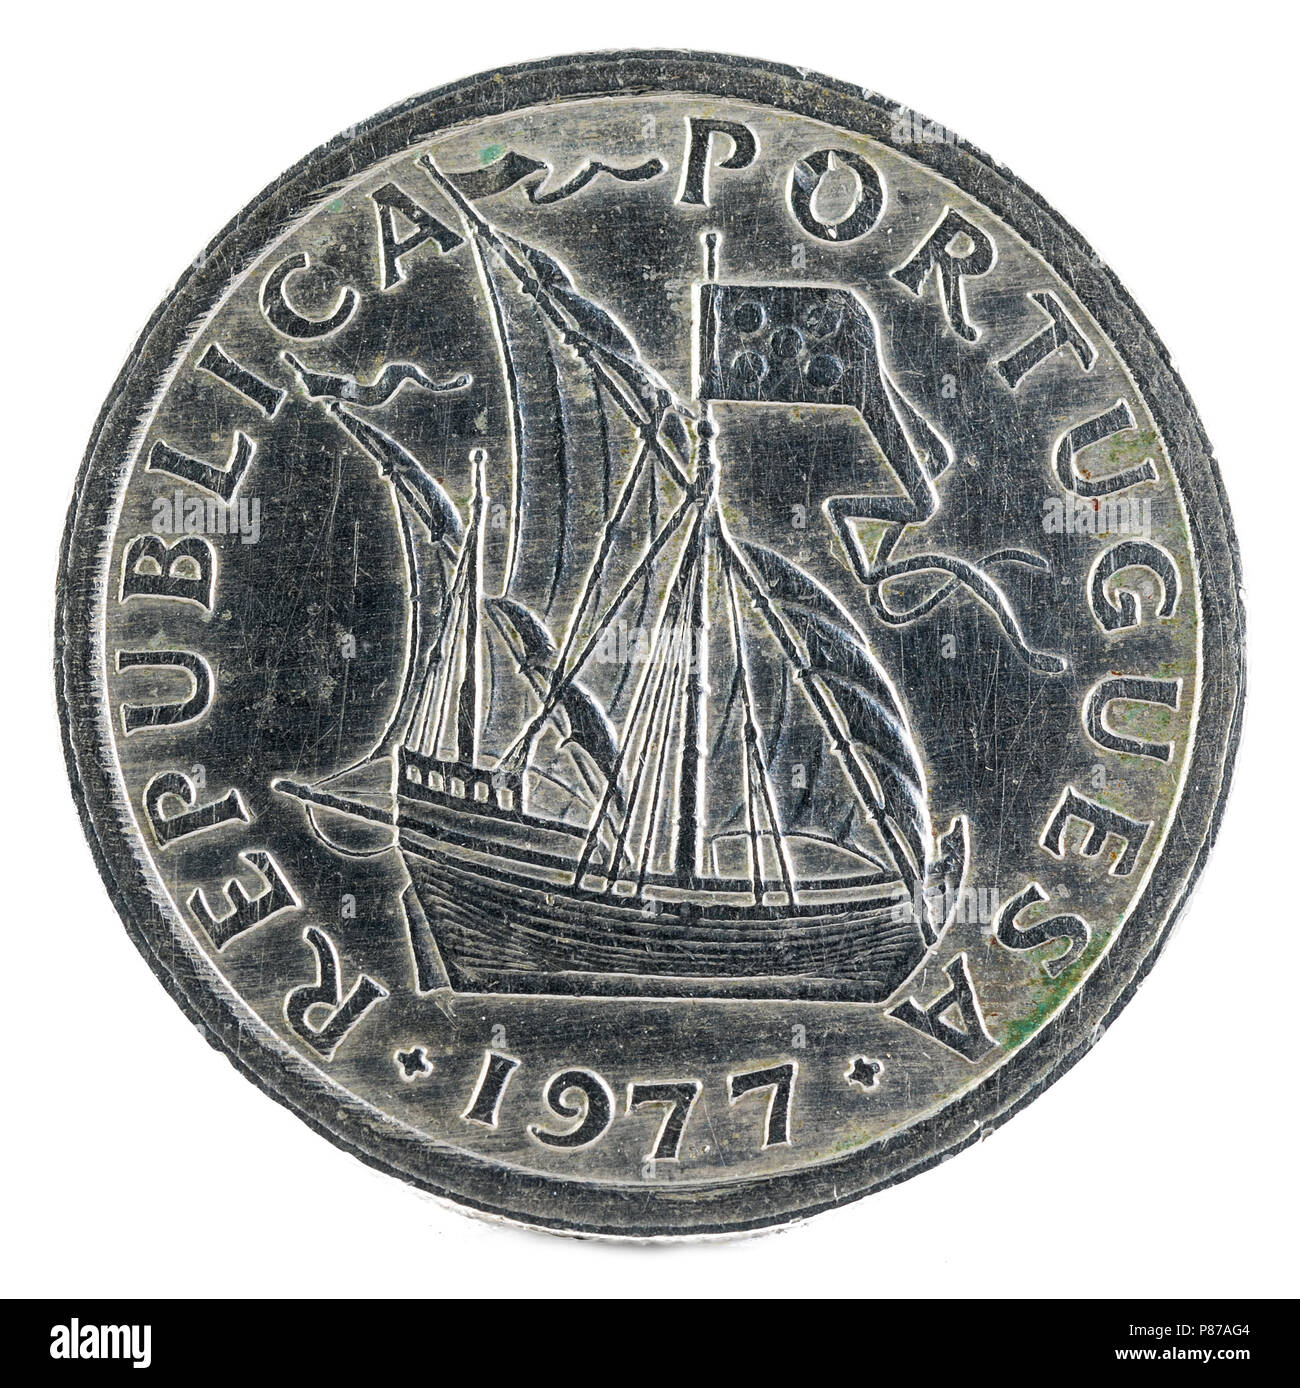 Old Portuguese coin. 2$50 Escudos. 1977. Obverse. Stock Photo